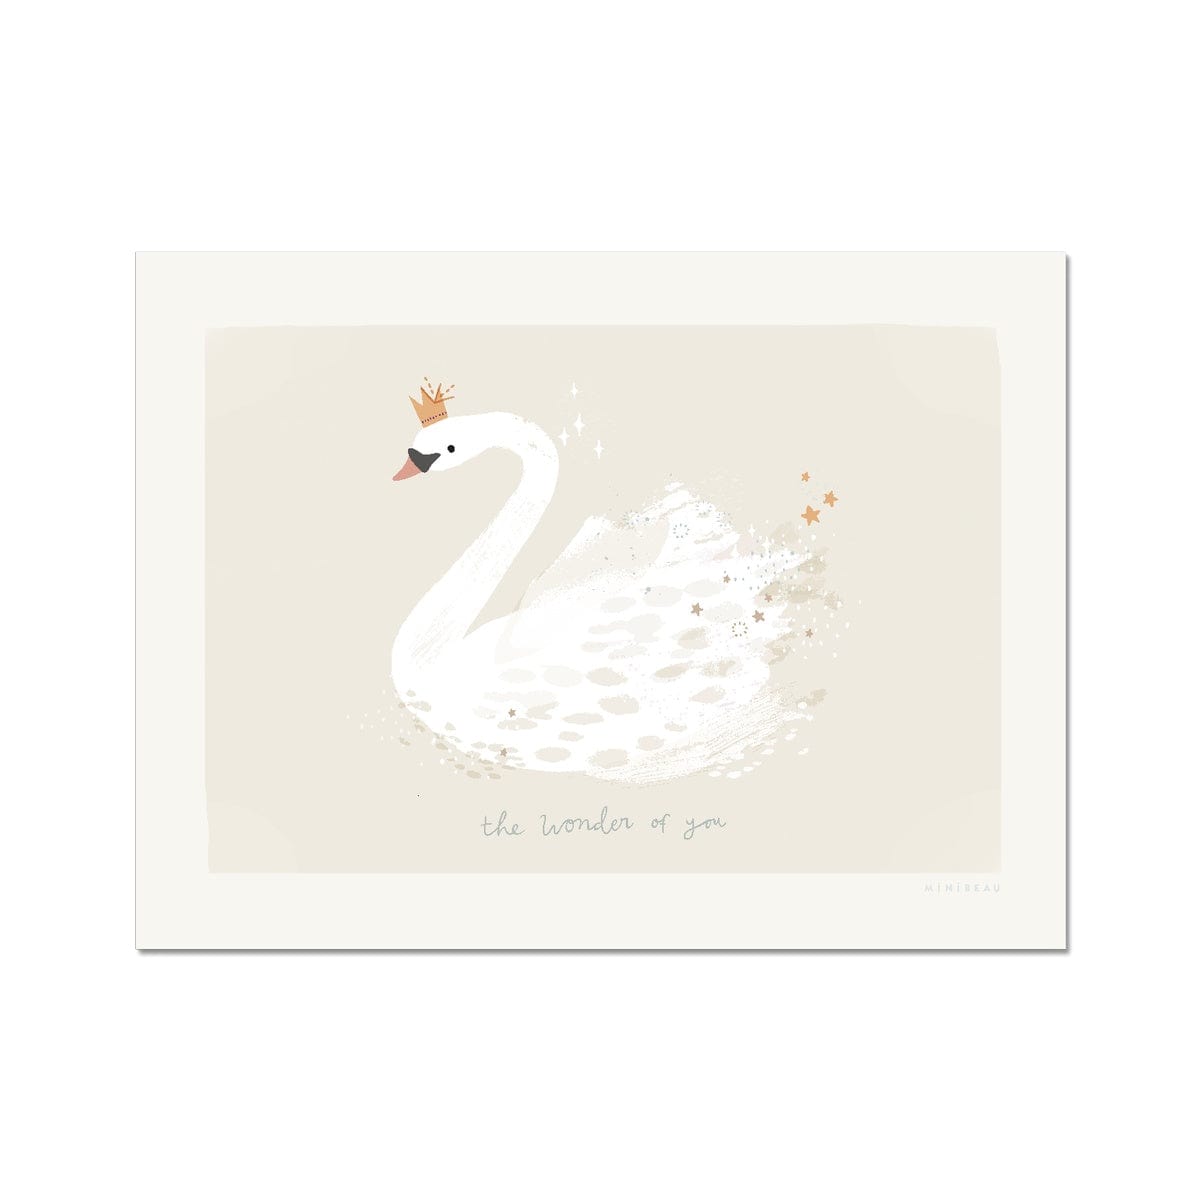 textured swan illustration on soft beige ground with milk white border